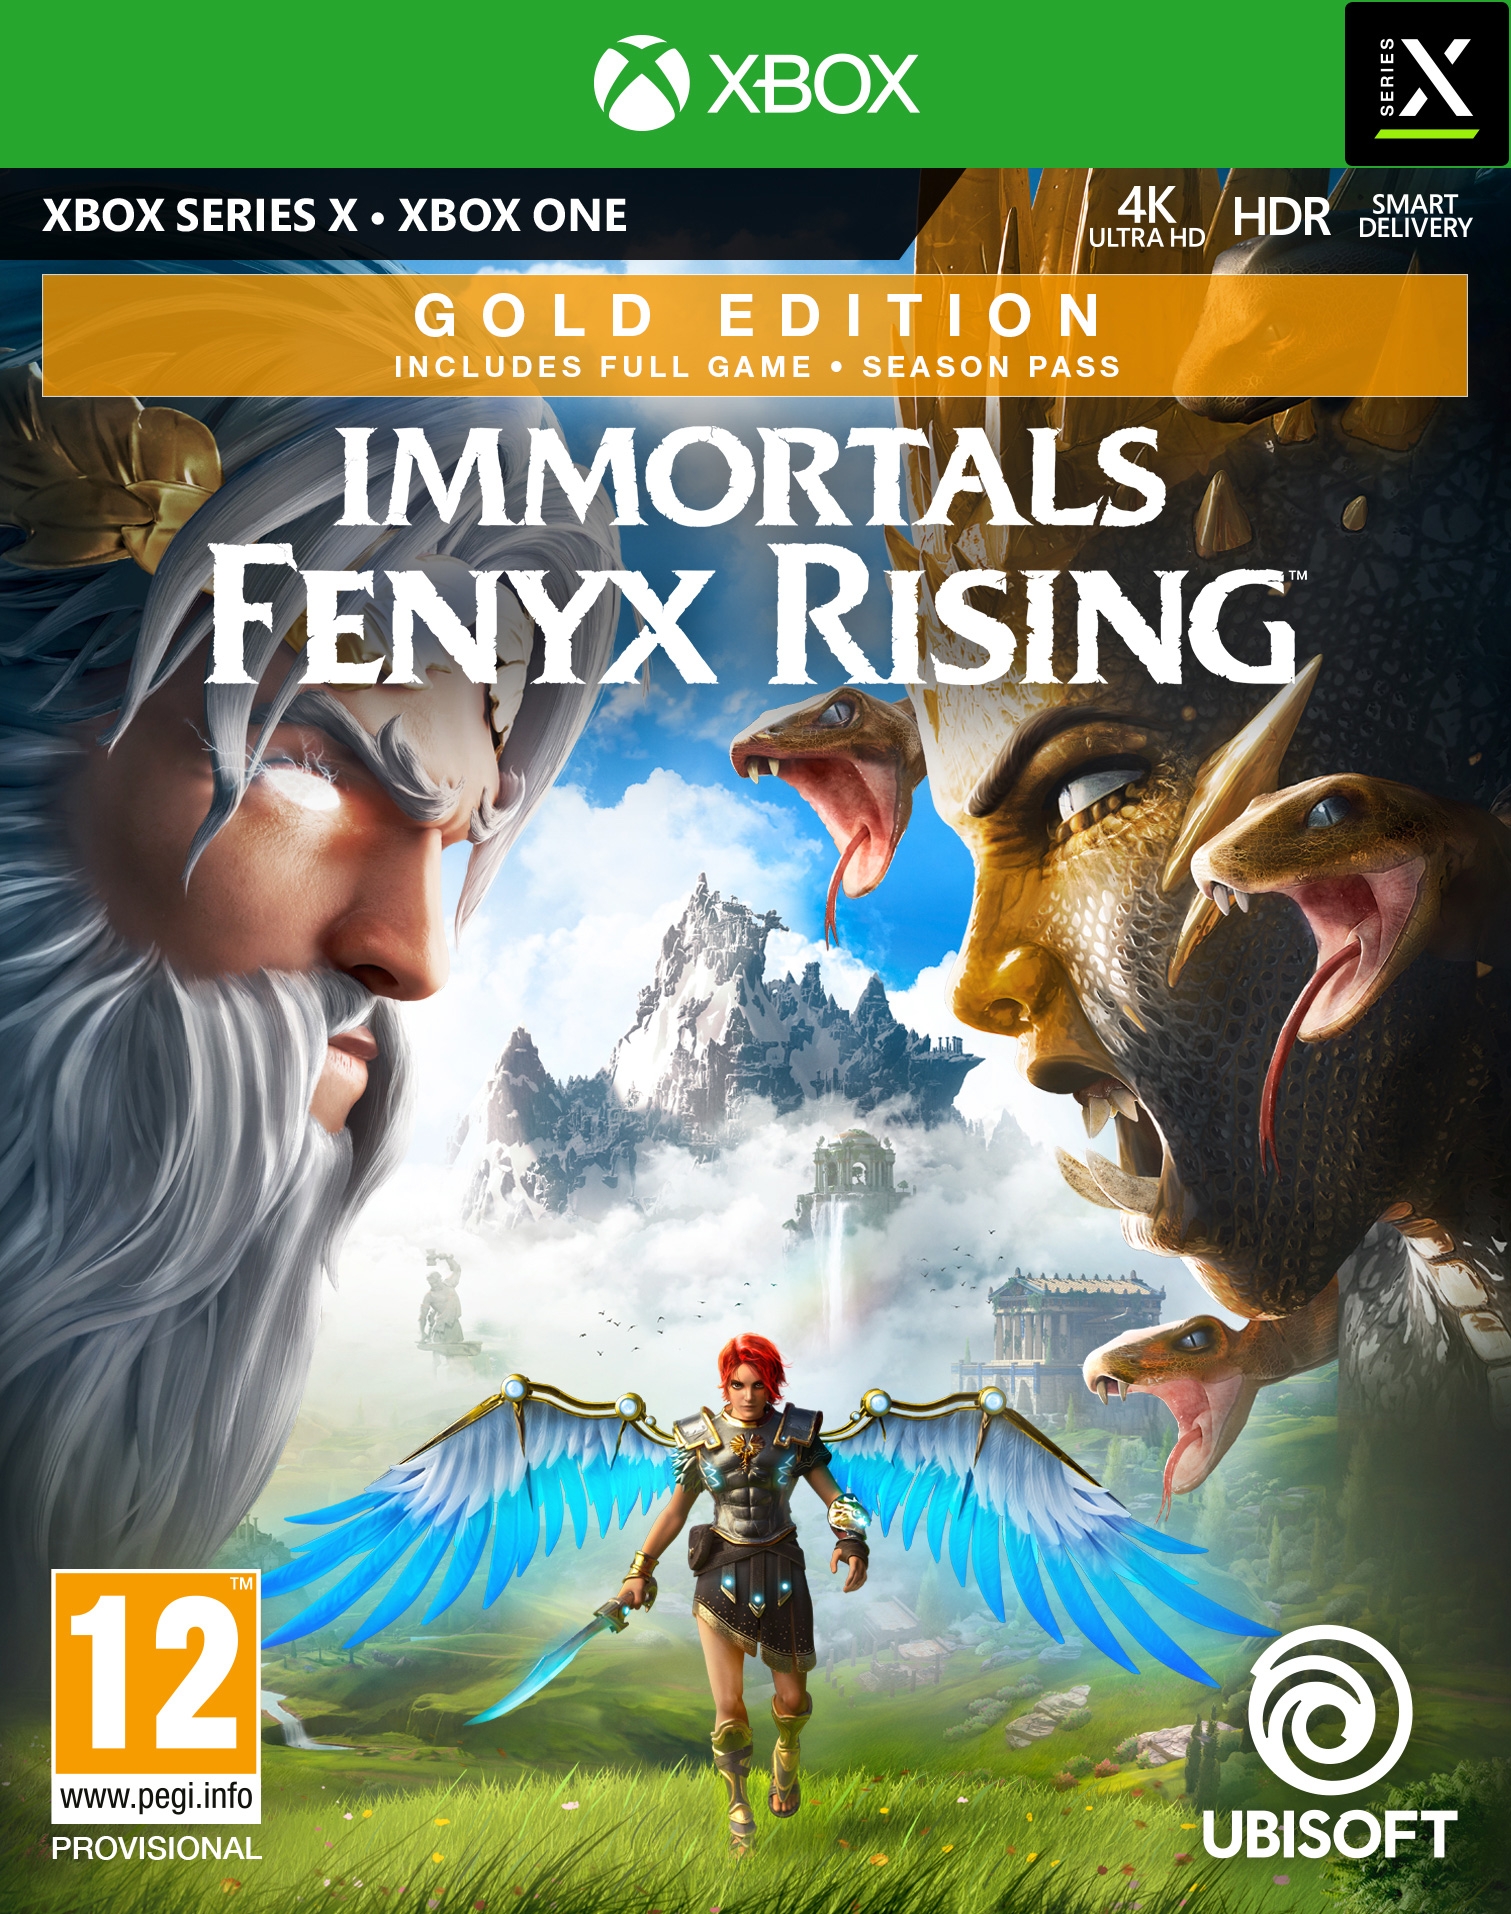 XBOXOne/SeriesX Immortals Fenyx Rising Gold Edition